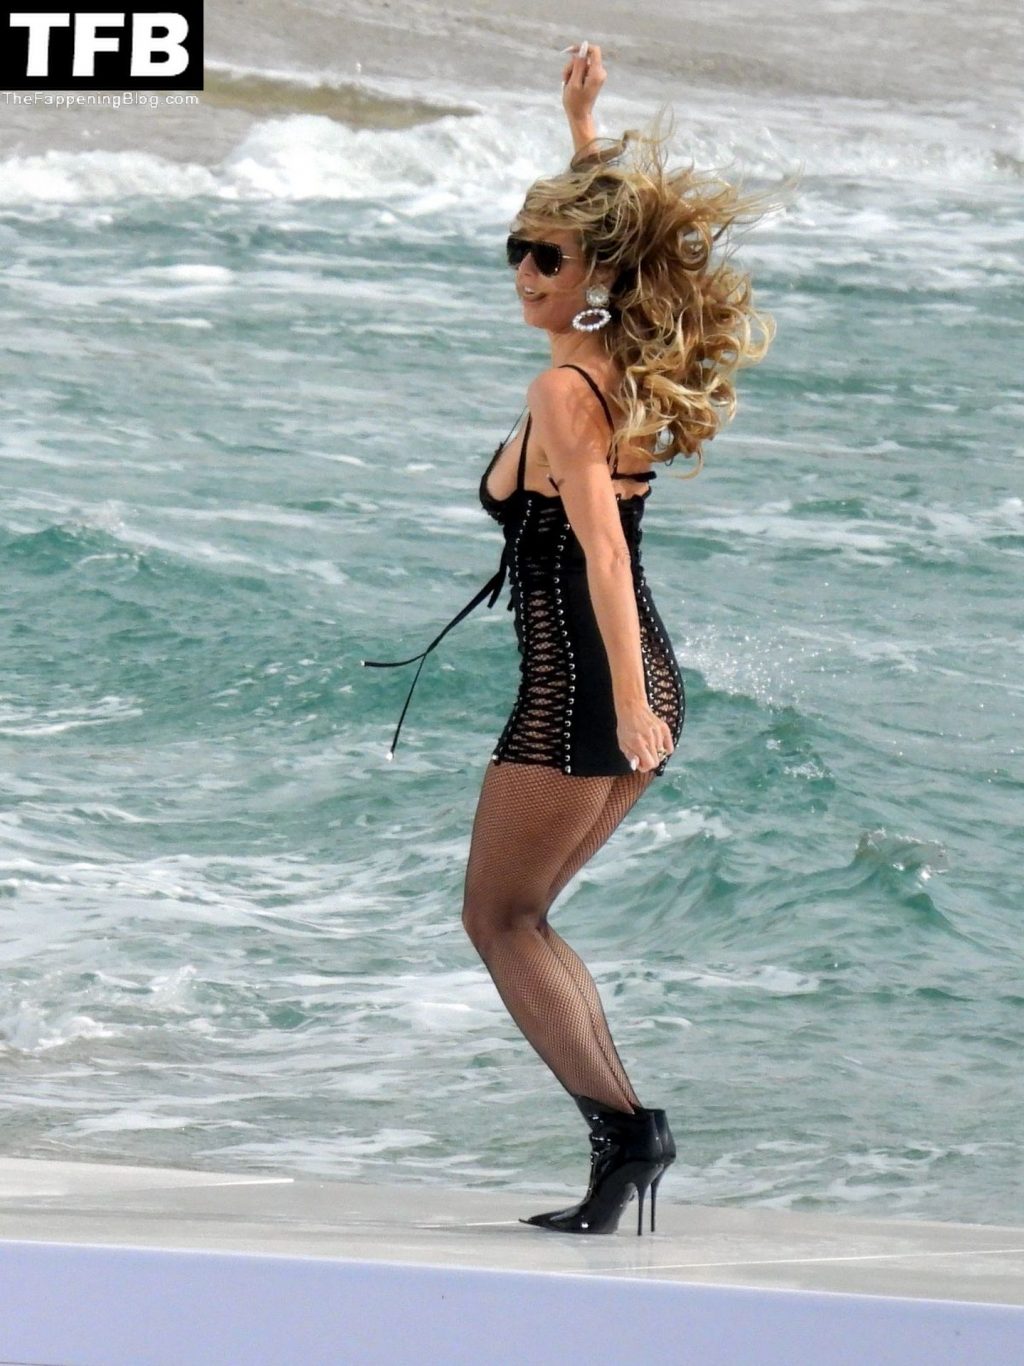 Heidi Klum Poses on the Beach (25 Photos)